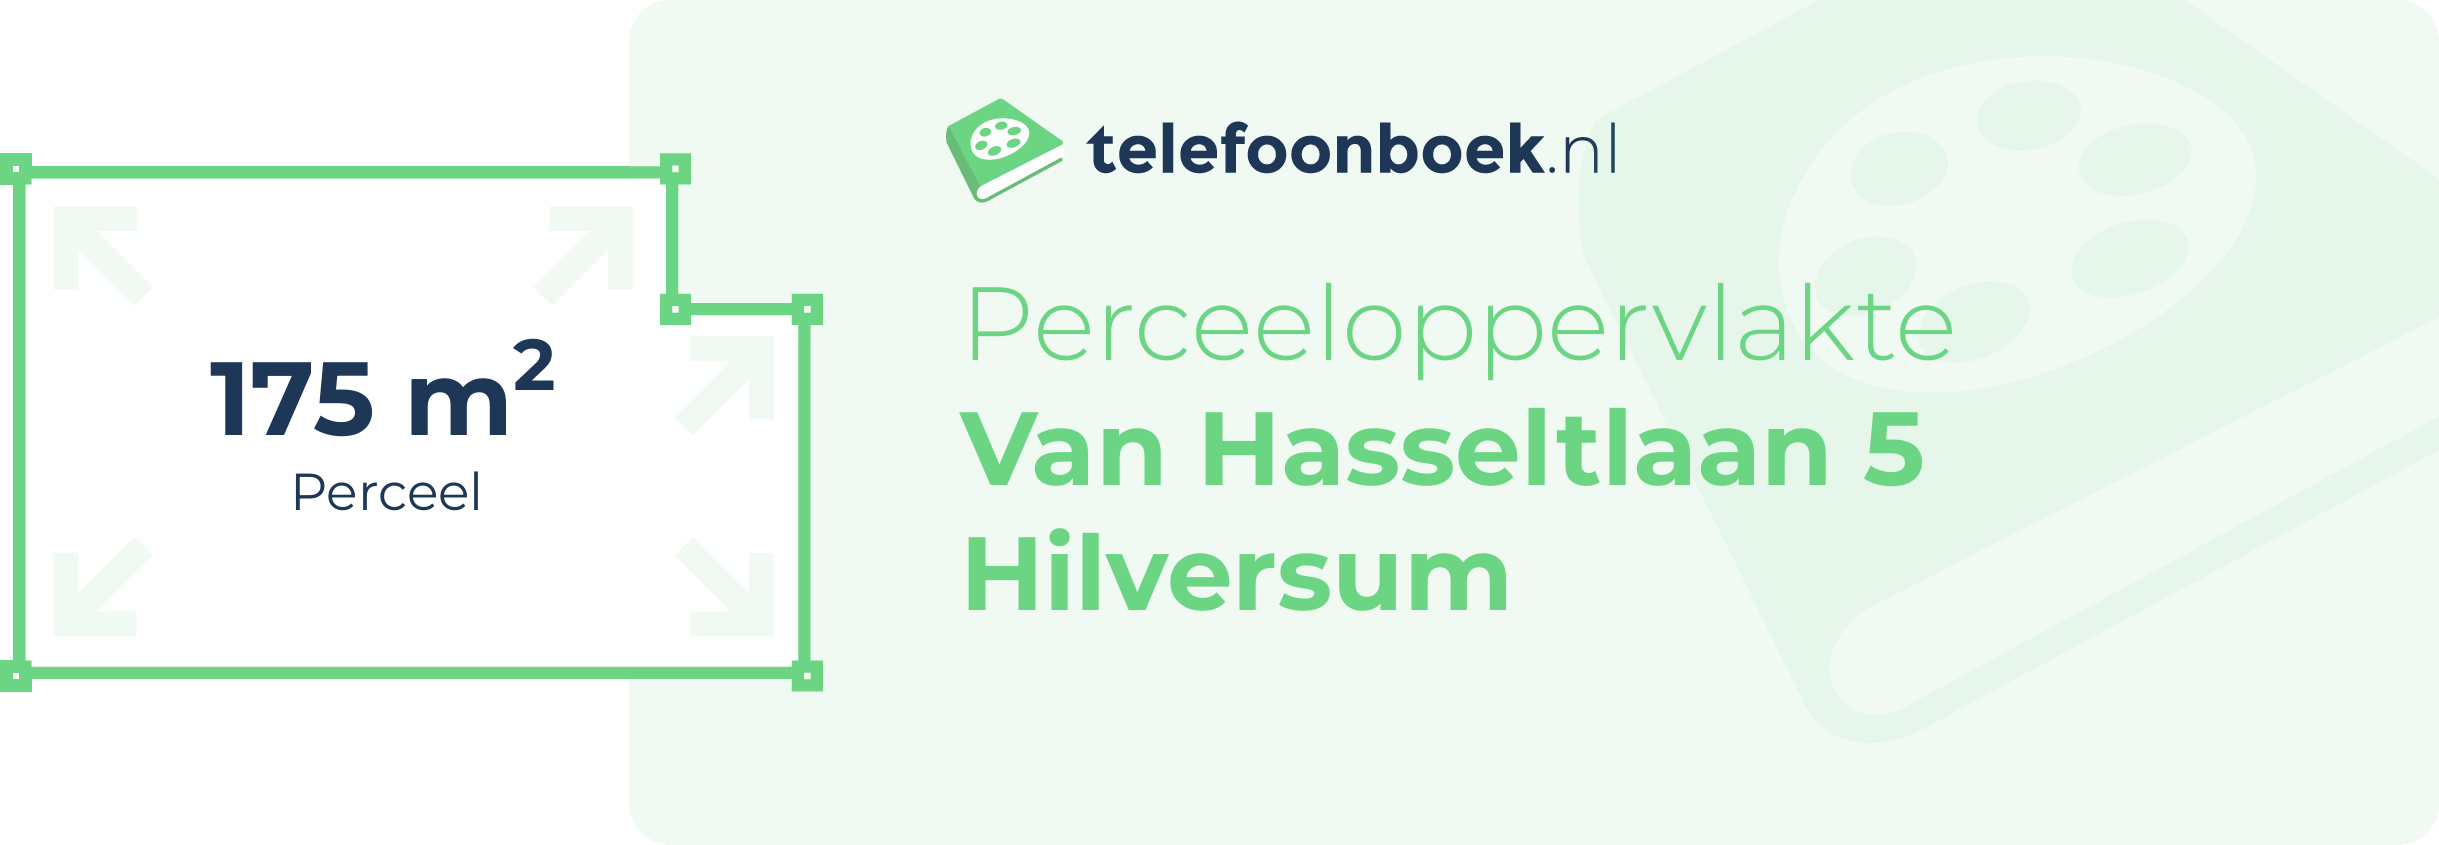 Perceeloppervlakte Van Hasseltlaan 5 Hilversum